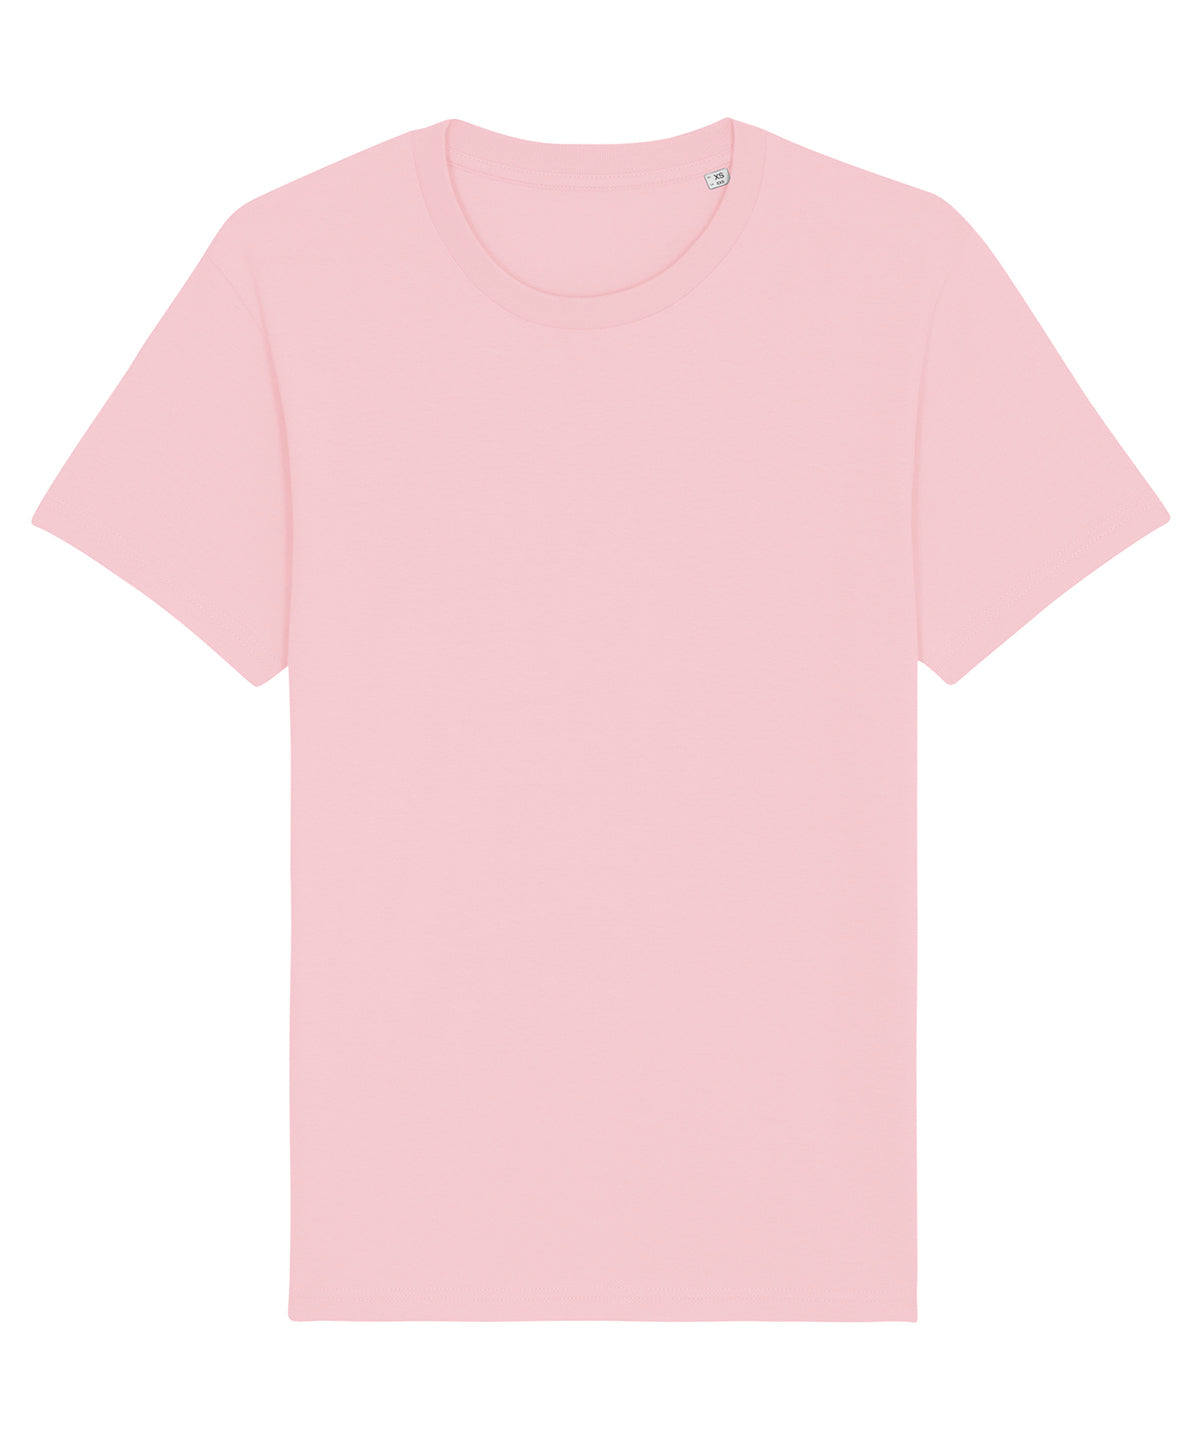 Stanley/Stella Rocker The Essential Unisex T-Shirt  Cotton Pink